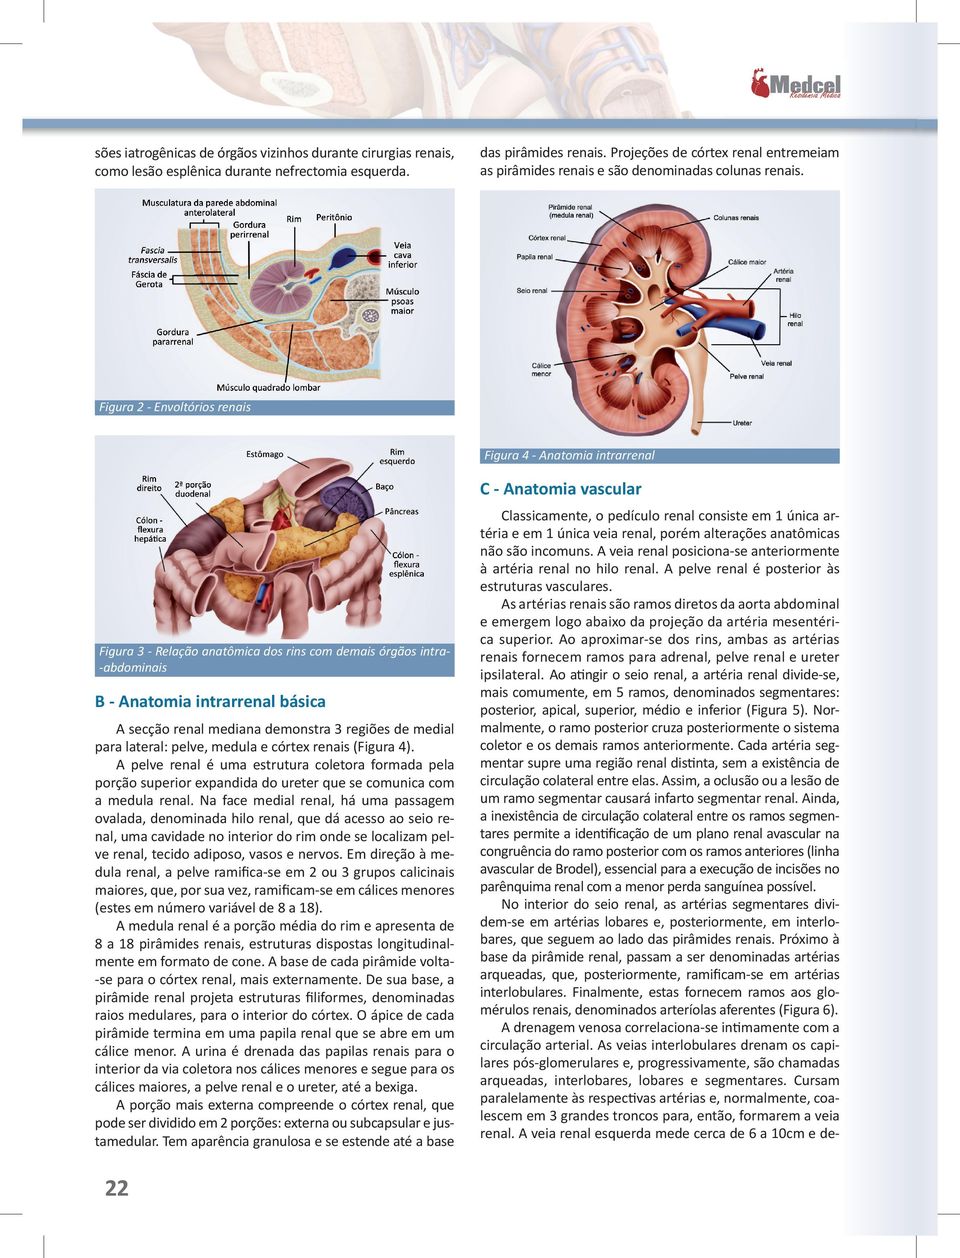 Figura 2 - Envoltórios renais Figura 4 - Anatomia intrarrenal C - Anatomia vascular Figura 3 - Relação anatômica dos rins com demais órgãos intra-abdominais B - Anatomia intrarrenal básica A secção